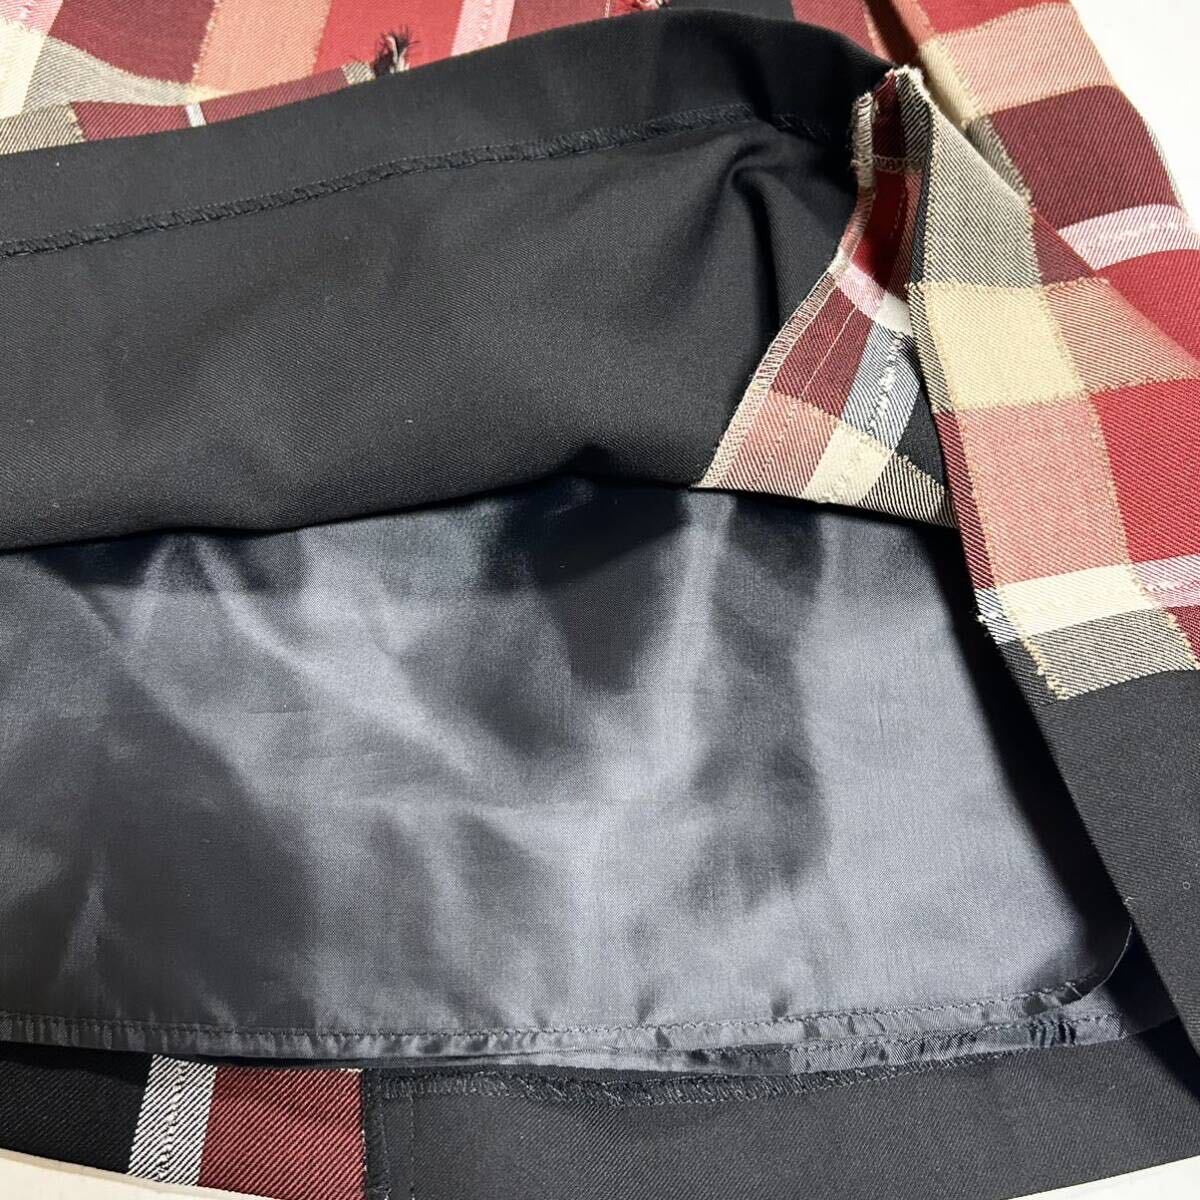 ブルーレーベル クレストブリッジBLUE LABEL CRESTBRIDGE スカート 巻きスカート ショート丈 チェック サンプル未使用品 送料無料